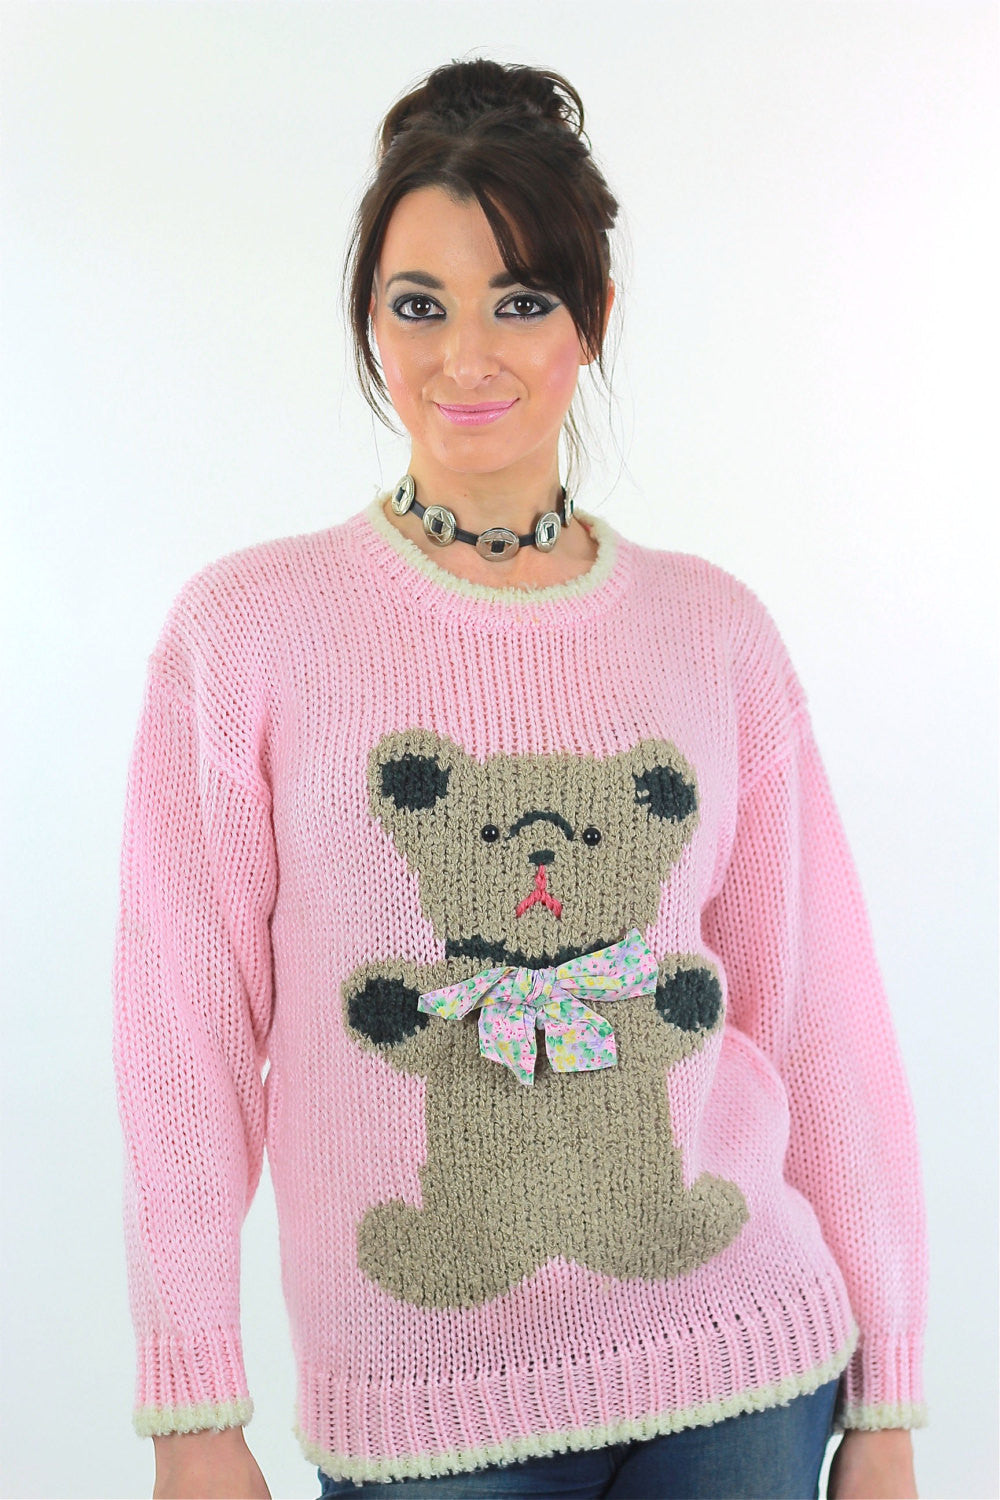 Hand-Knit Teddy Bear in Sweater